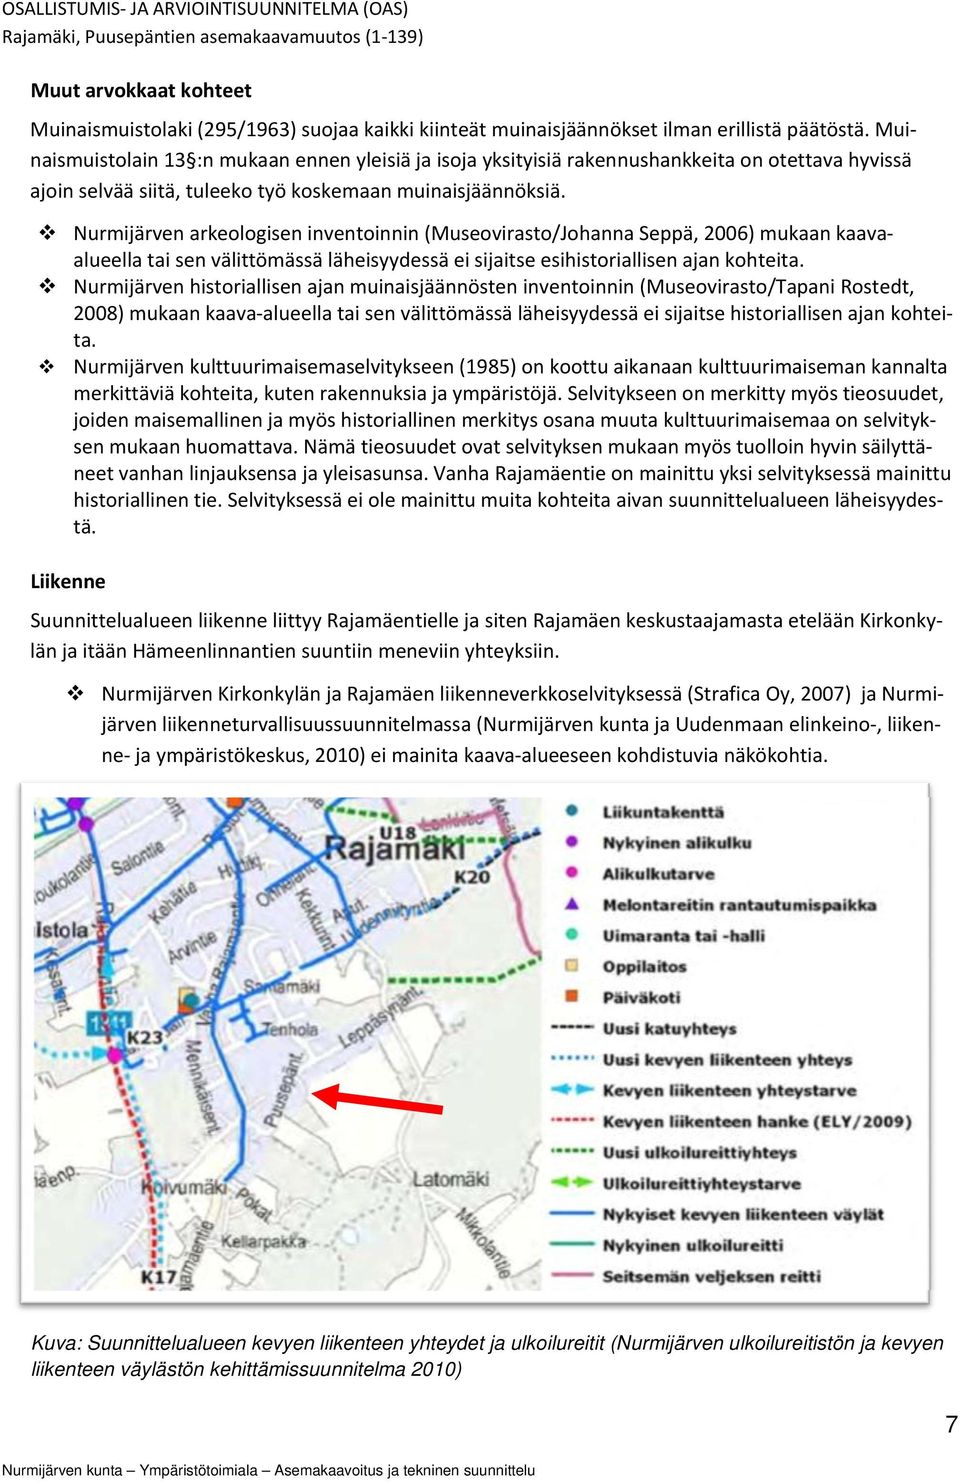 Nurmijärven arkeologisen inventoinnin (Museovirasto/Johanna Seppä, 2006) mukaan kaava alueella tai sen välittömässä läheisyydessä ei sijaitse esihistoriallisen ajan kohteita.